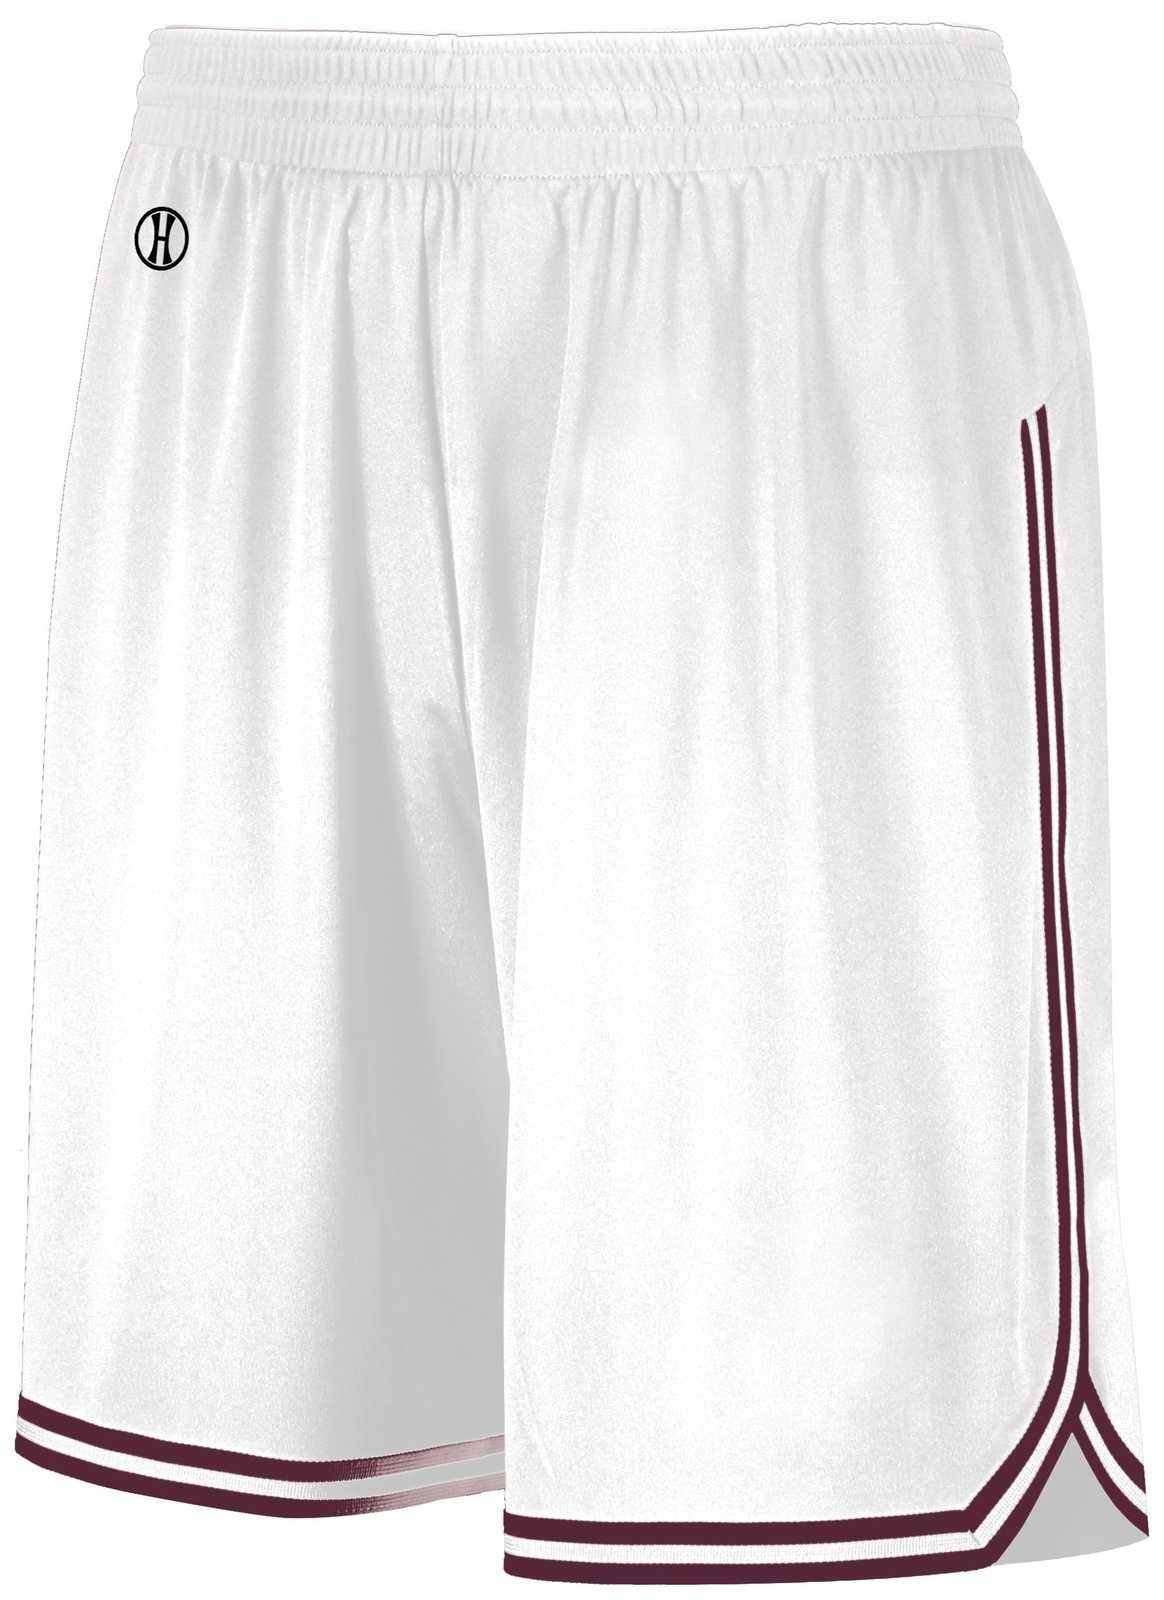 Holloway 224077 Retro Basketball Shorts - White Maroon - HIT a Double